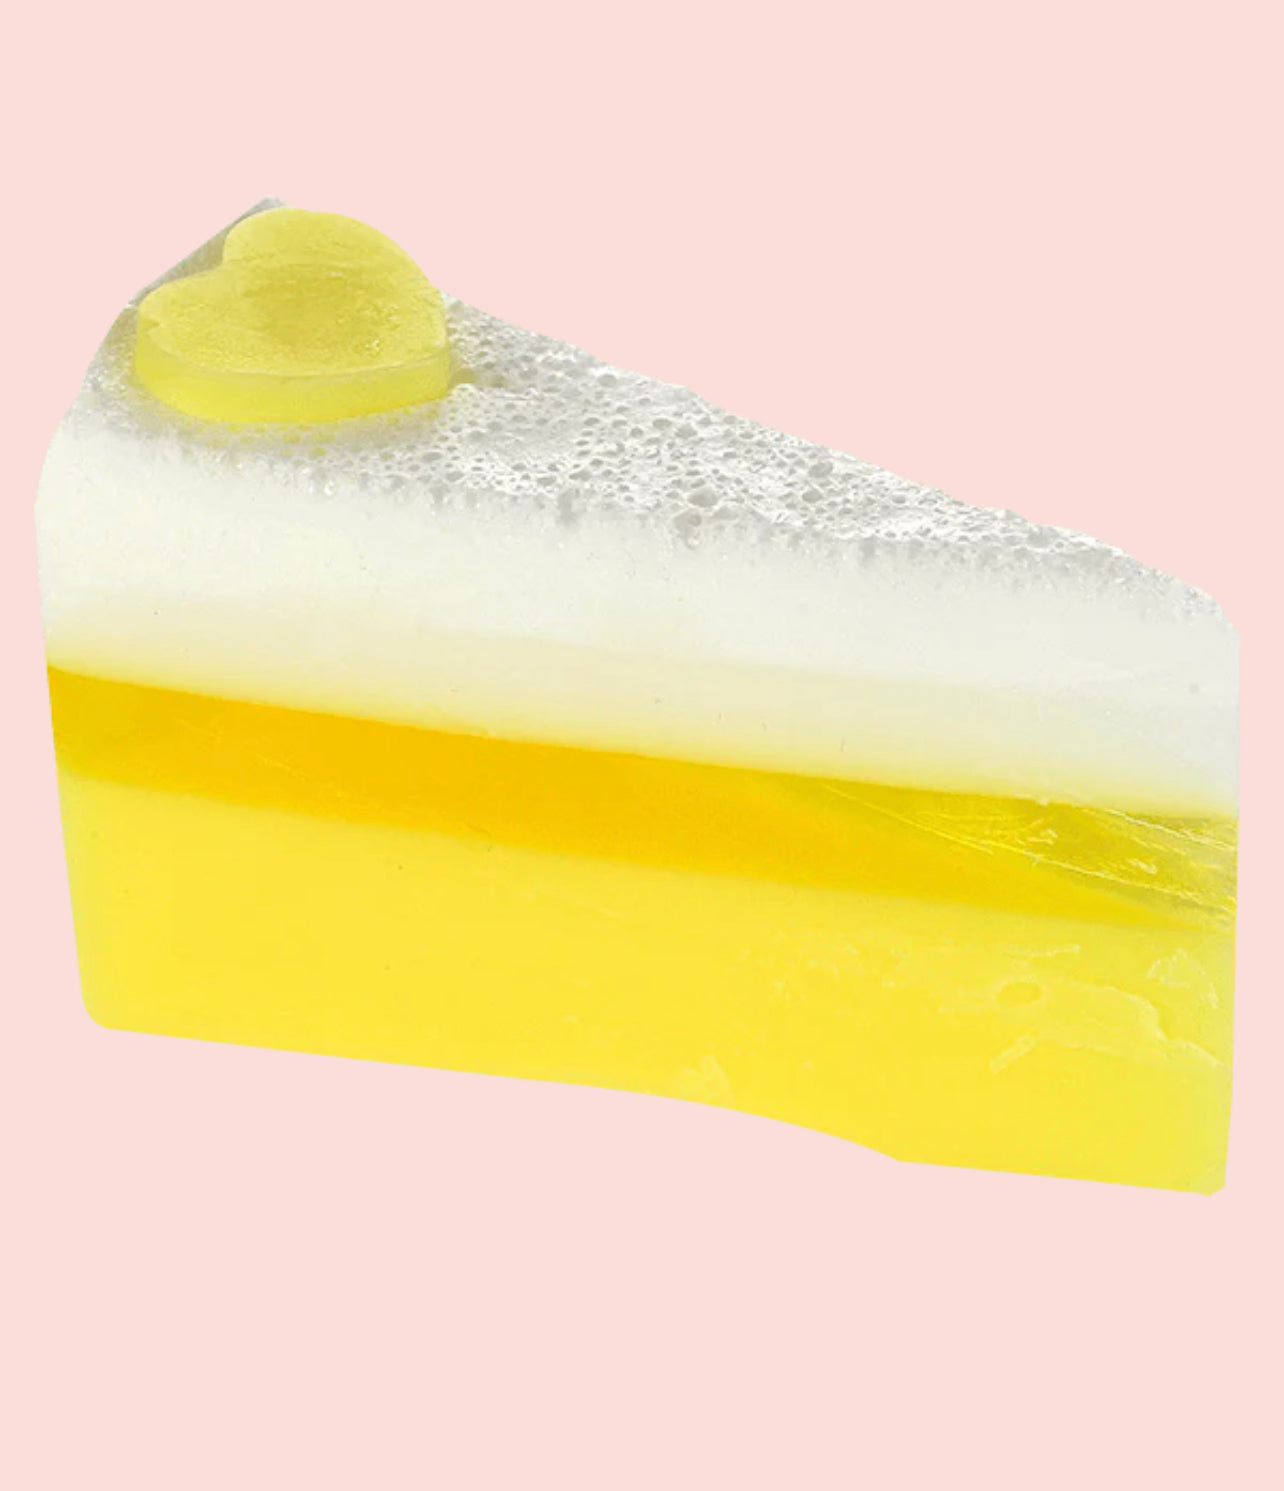 Lemon Meringue Delight Soap Cake